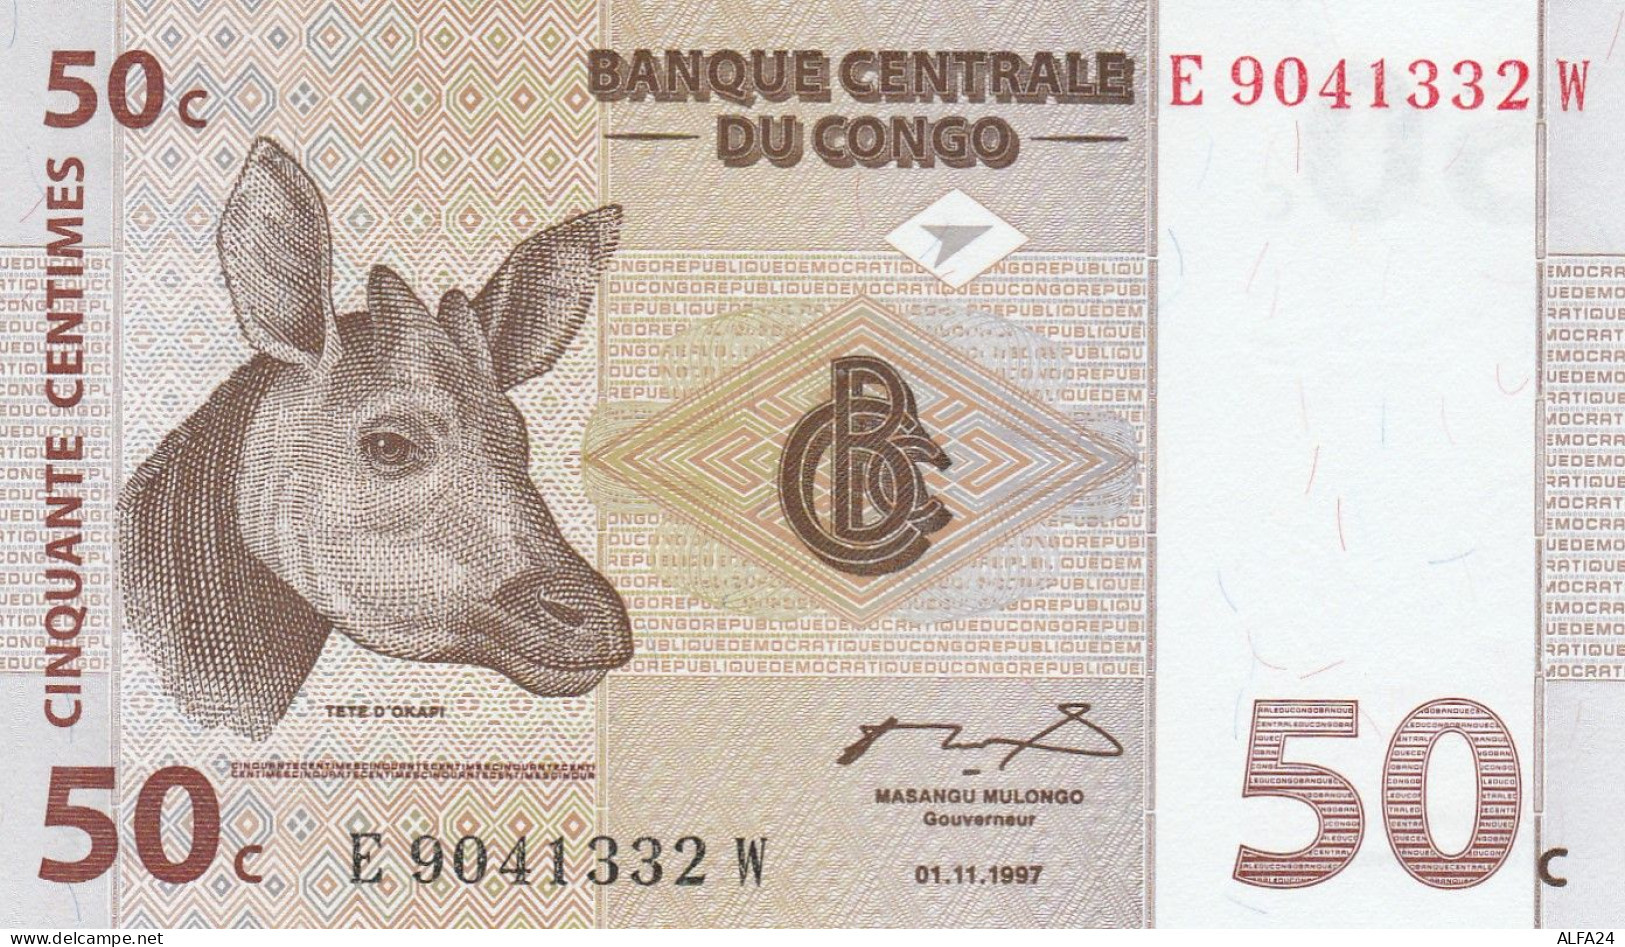 CONGO 50 CENTIMES -UNC - Republic Of Congo (Congo-Brazzaville)